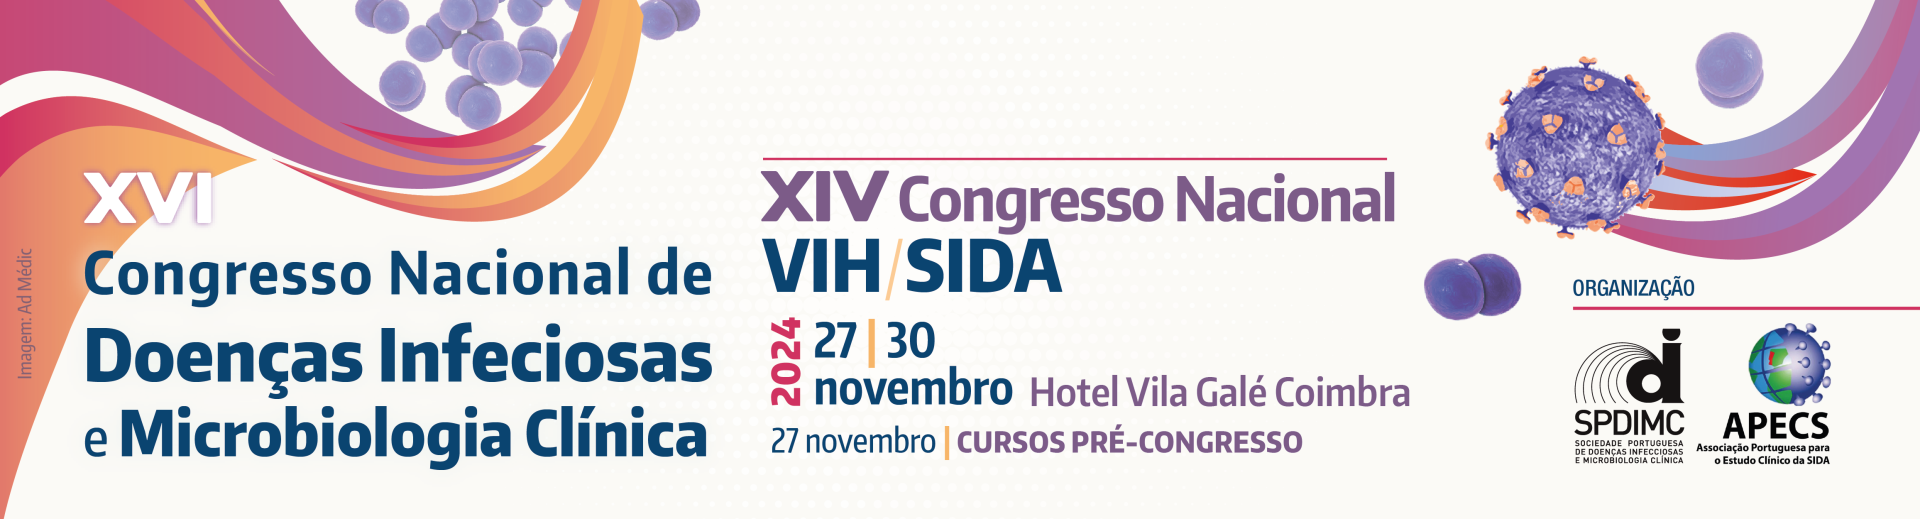 XVI Congresso Nacional de Doenas Infeciosas e Microbiologia Clnica | XIV Congresso Nacional VIH/SIDA